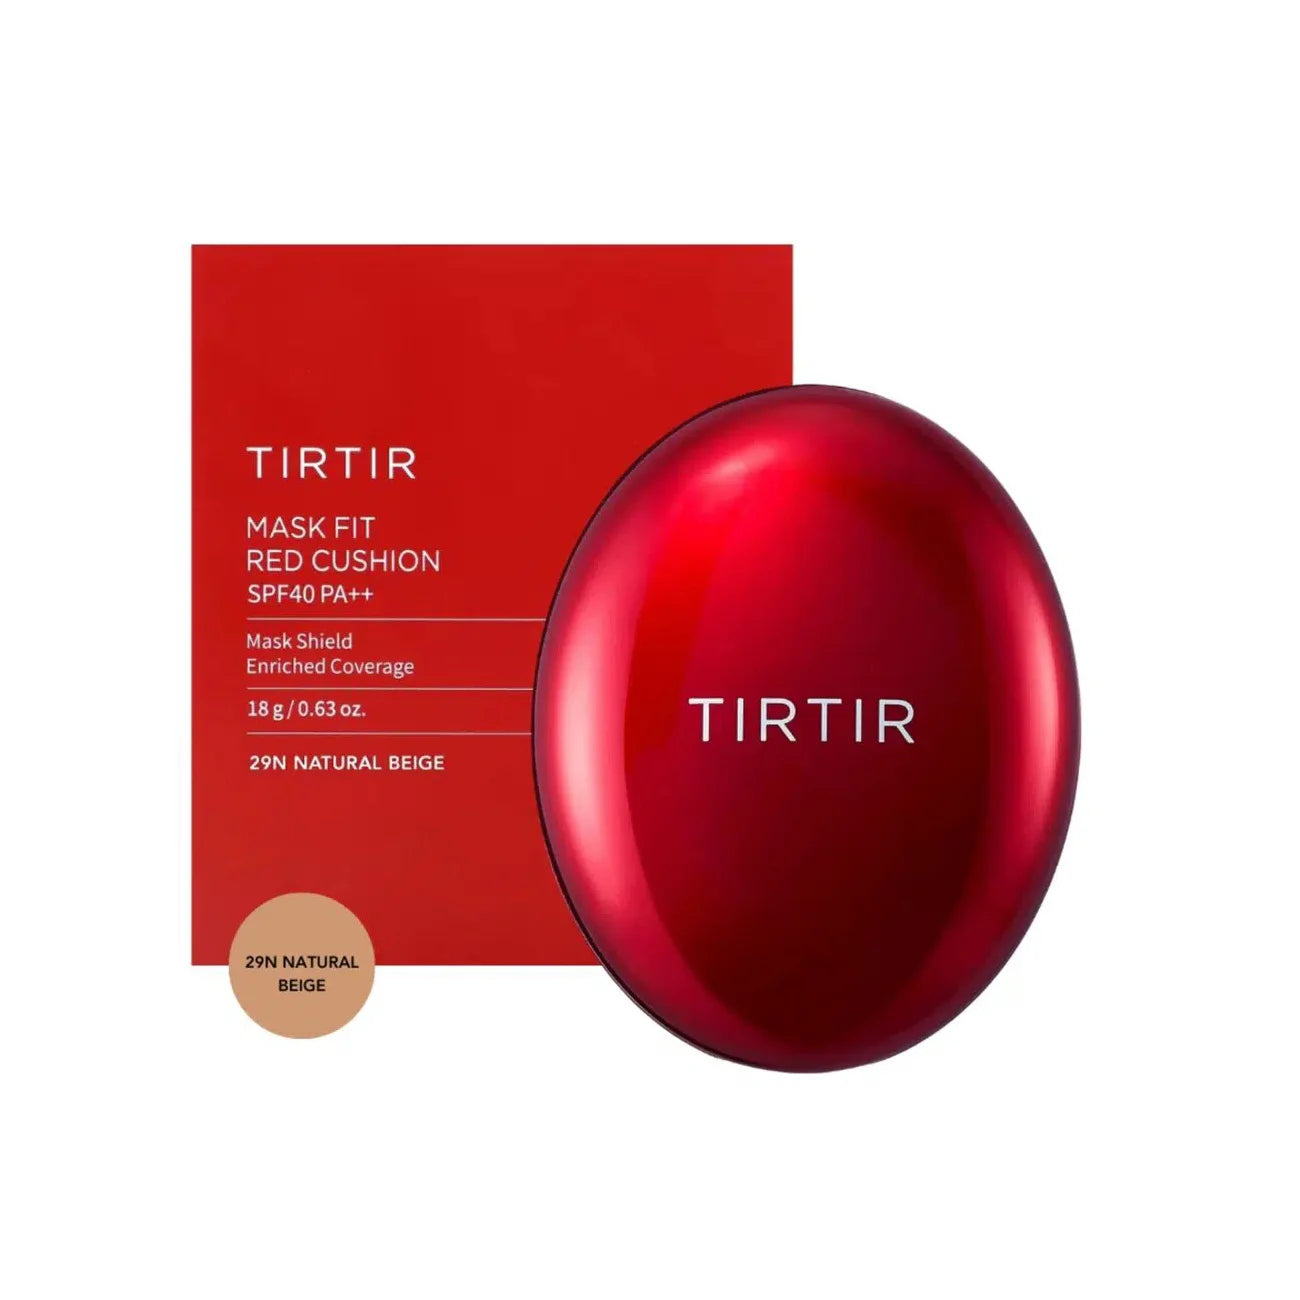 TIRTIR Mask Fit Red Cushion 29N Natural Beige best selling TikTok popular viral Korean cosmetics Japan Asian Makeup SPF sunscreen K Beauty World